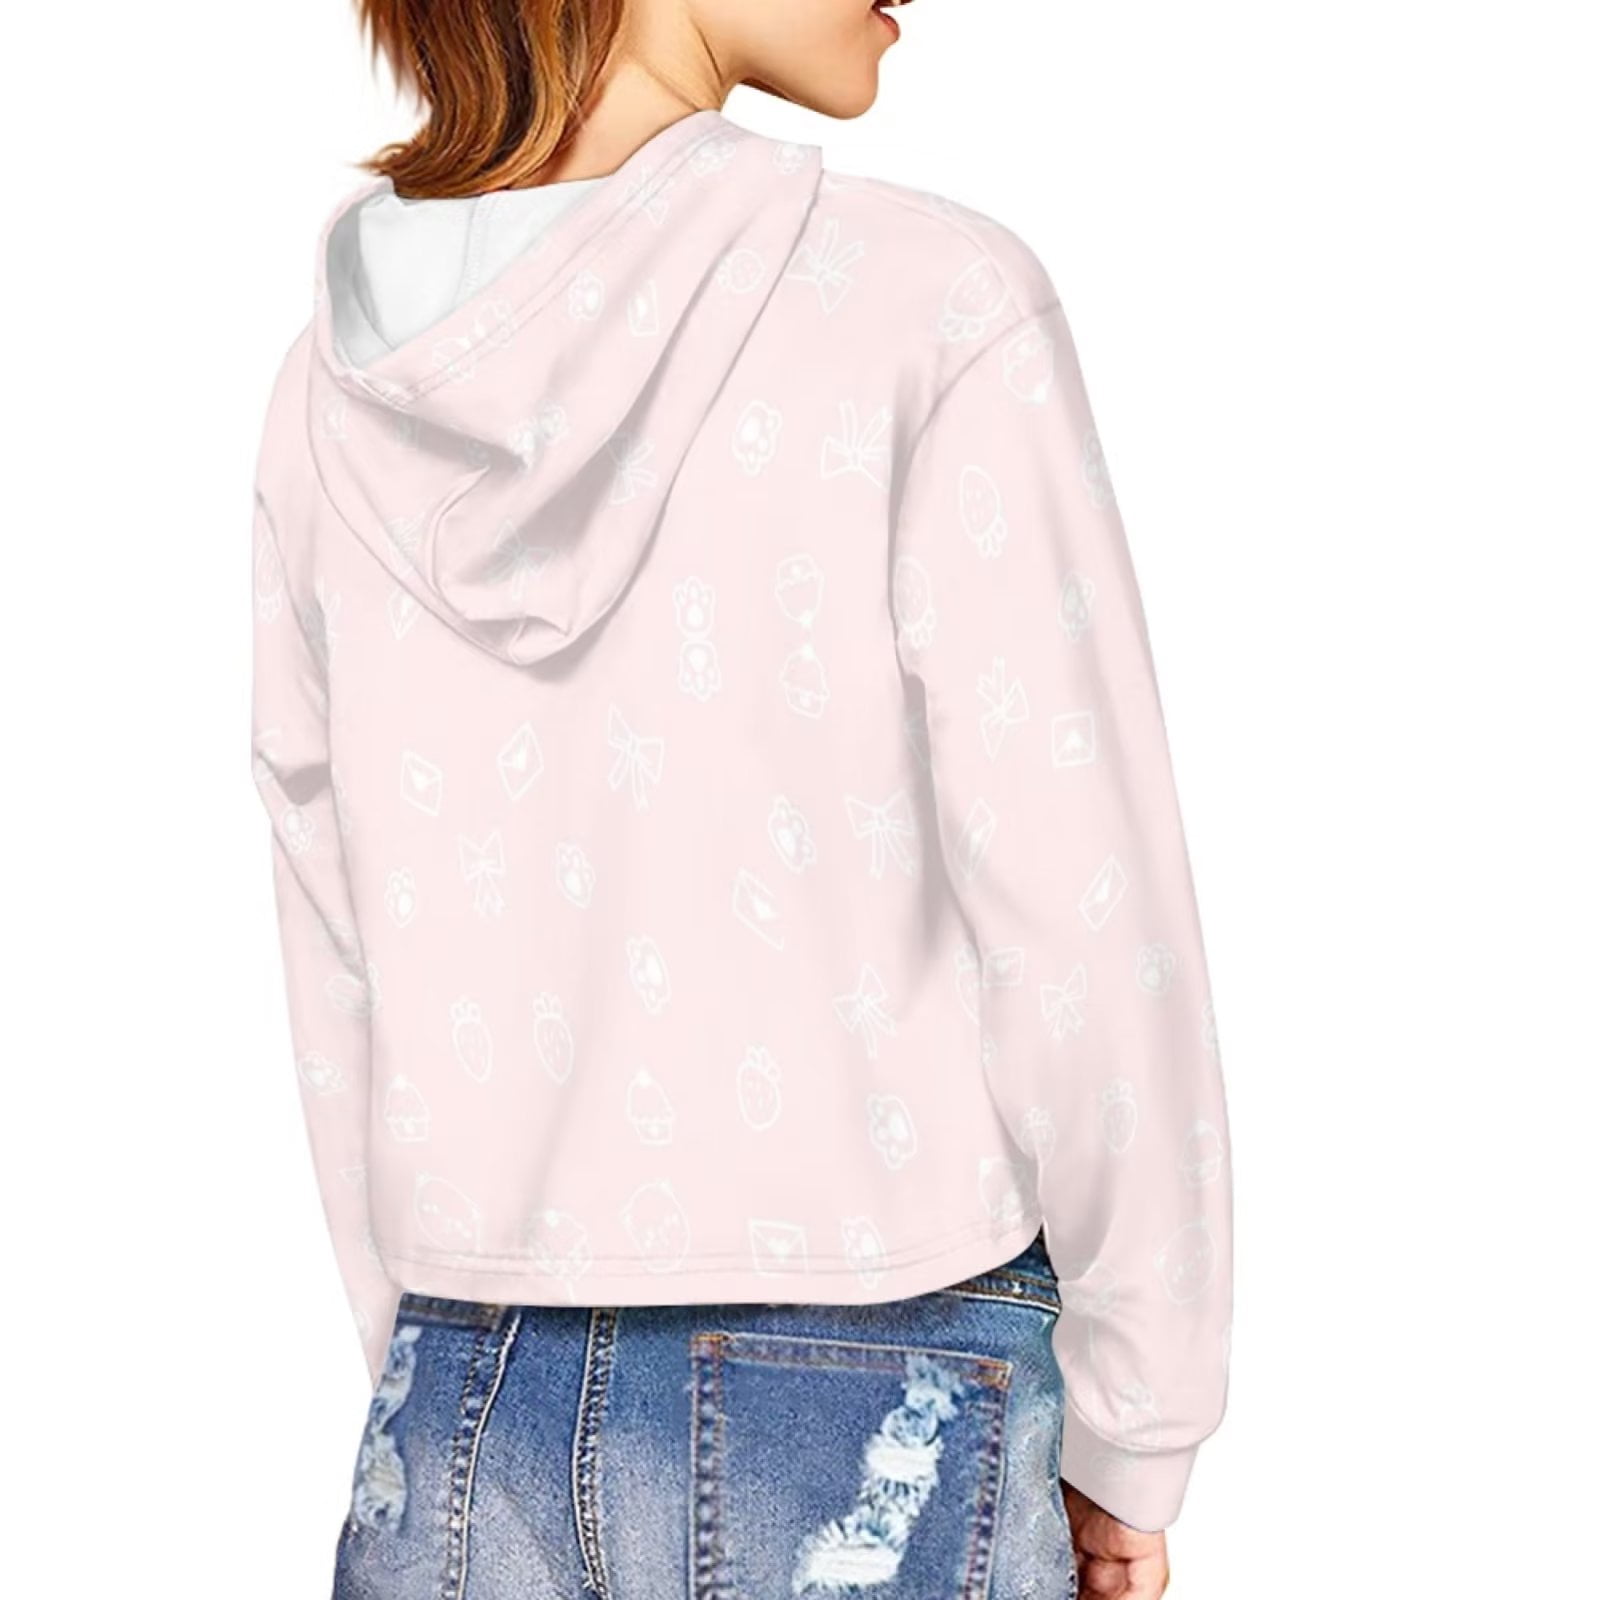 Pzuqiu Pink Preppy Crop Top Hoodies for Teen Girls Long Sleeve